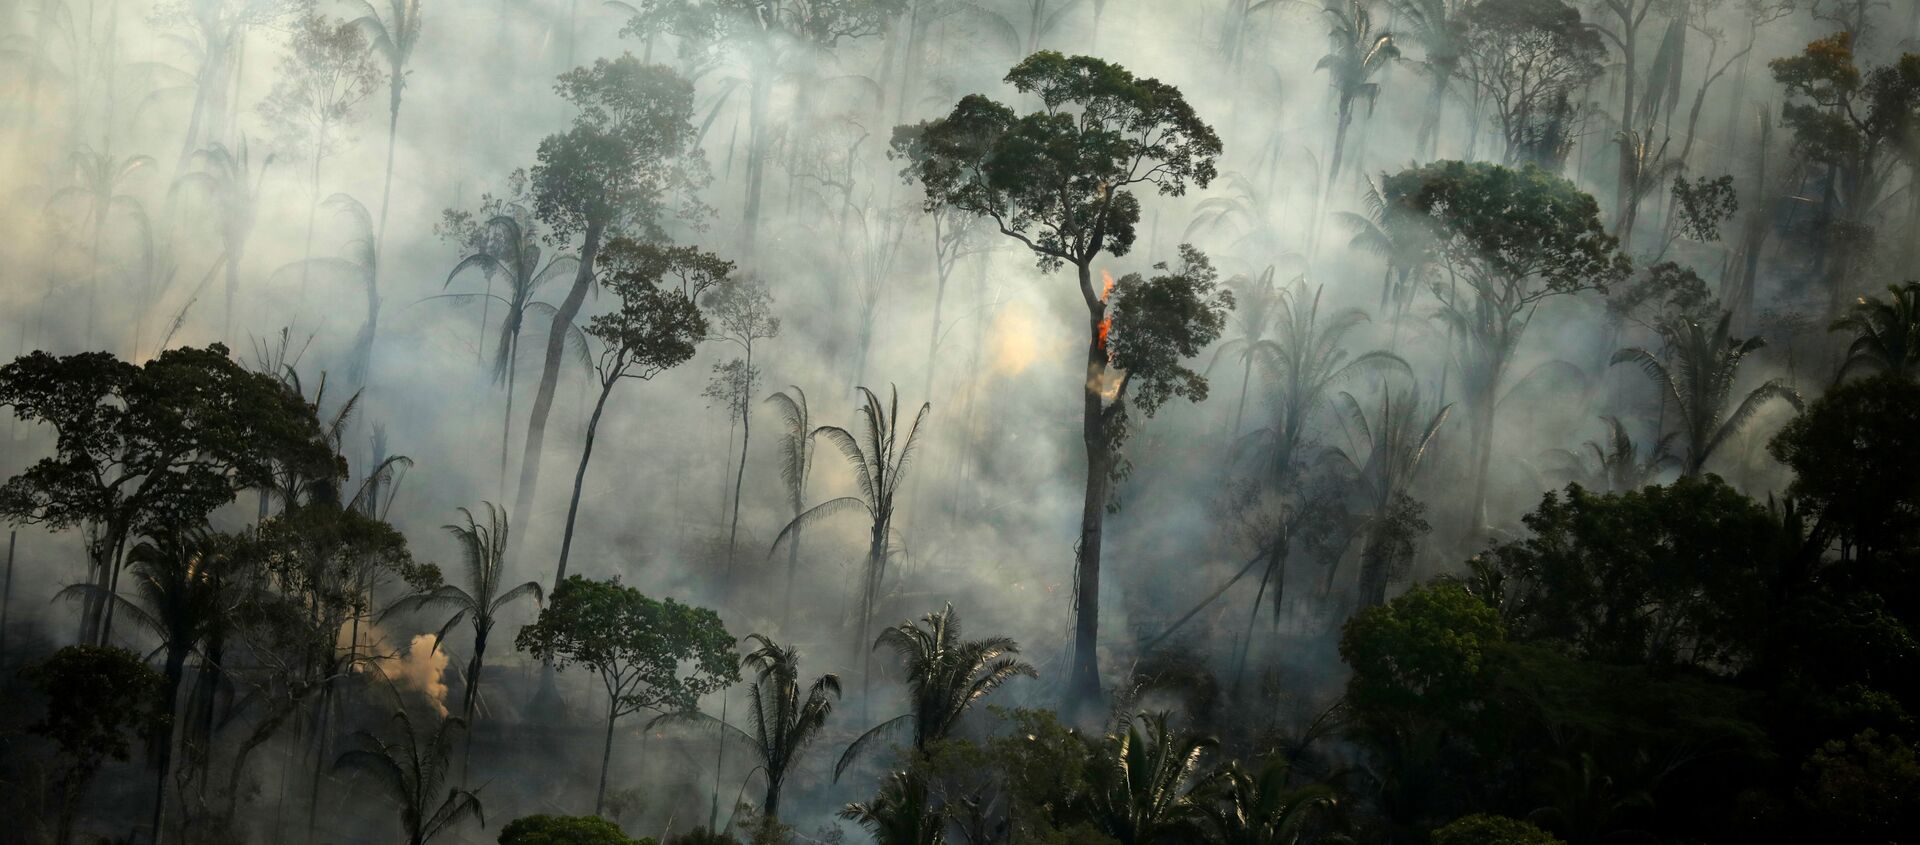 Khói bao trùm một khu rừng đang cháy trong một trận hỏa hoạn ở khu vực rừng nhiệt đới Amazon, Brazil. - Sputnik Việt Nam, 1920, 17.03.2021